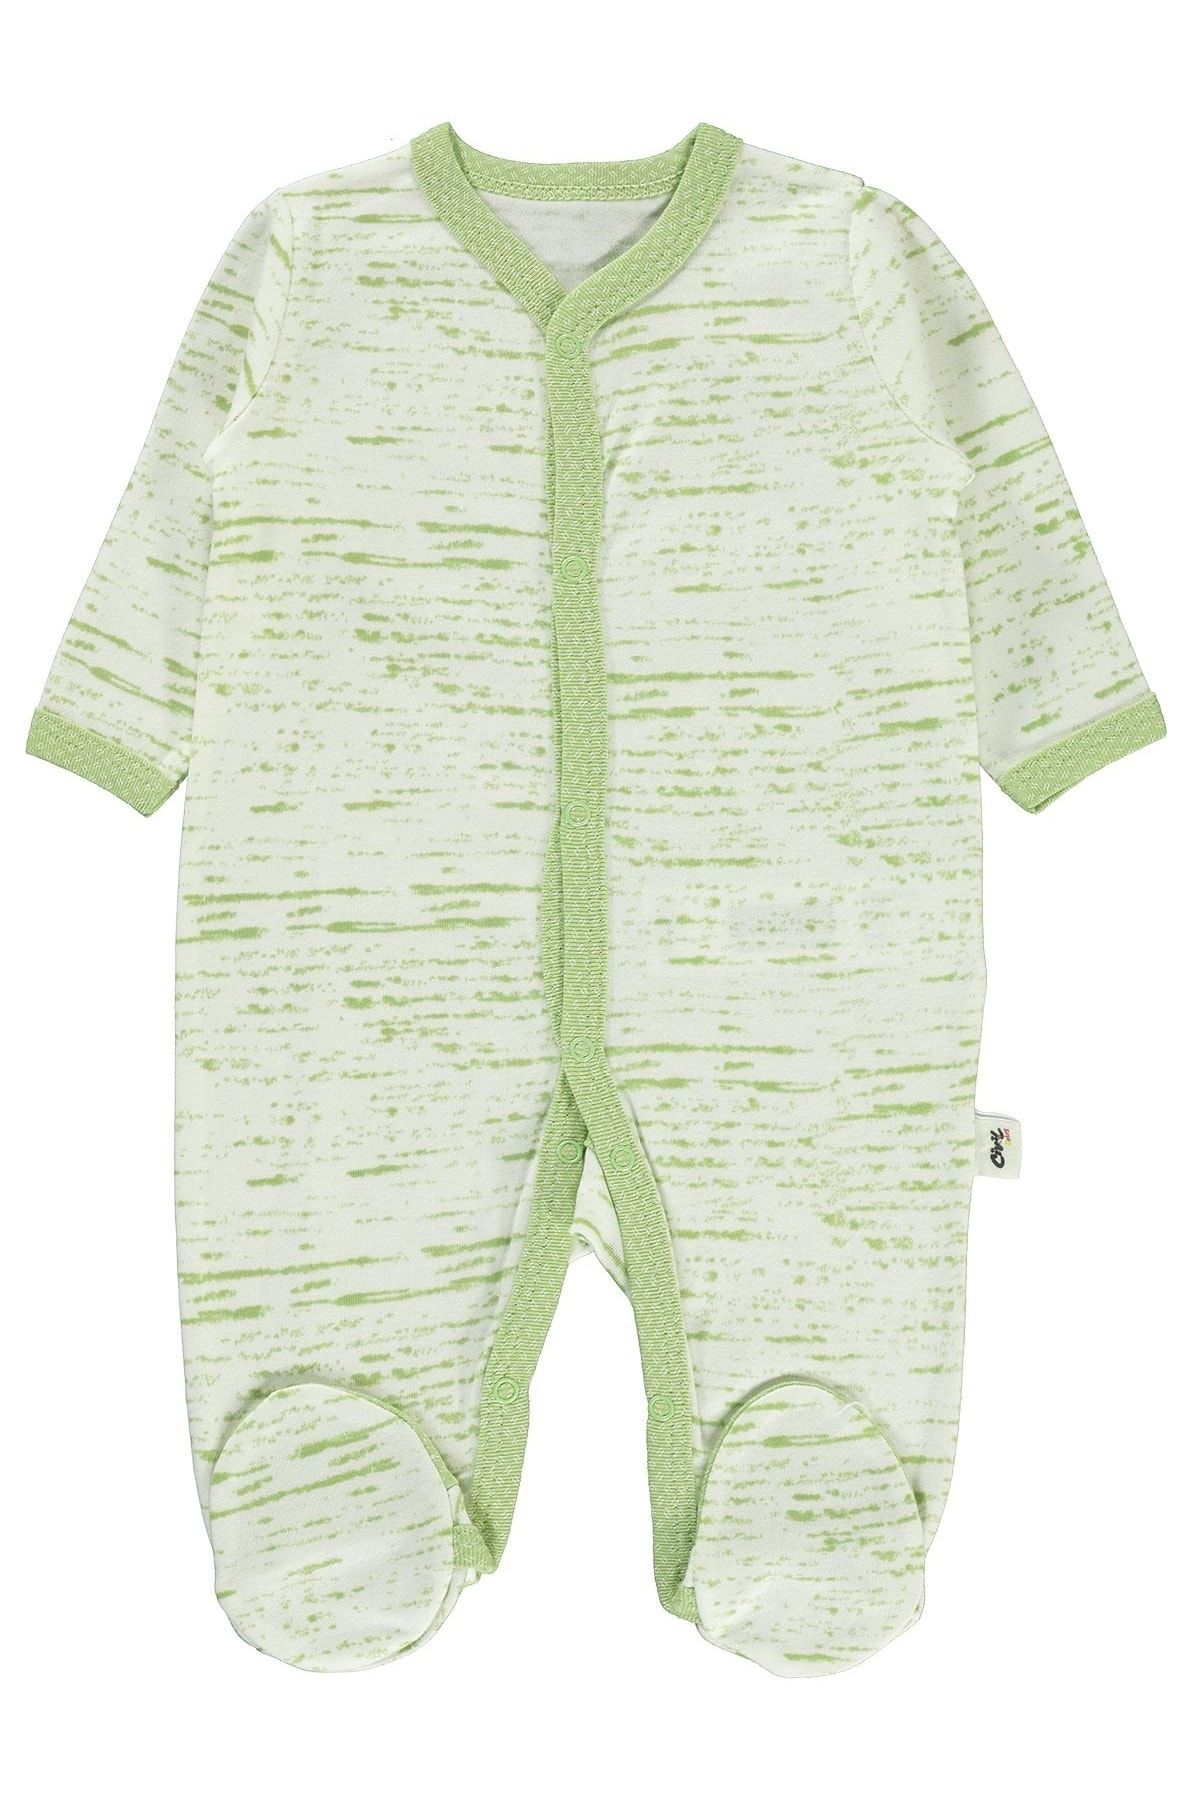 Civil Baby Erkek Bebek Patikli Tulum 1-6 Ay Sarı Yeşil